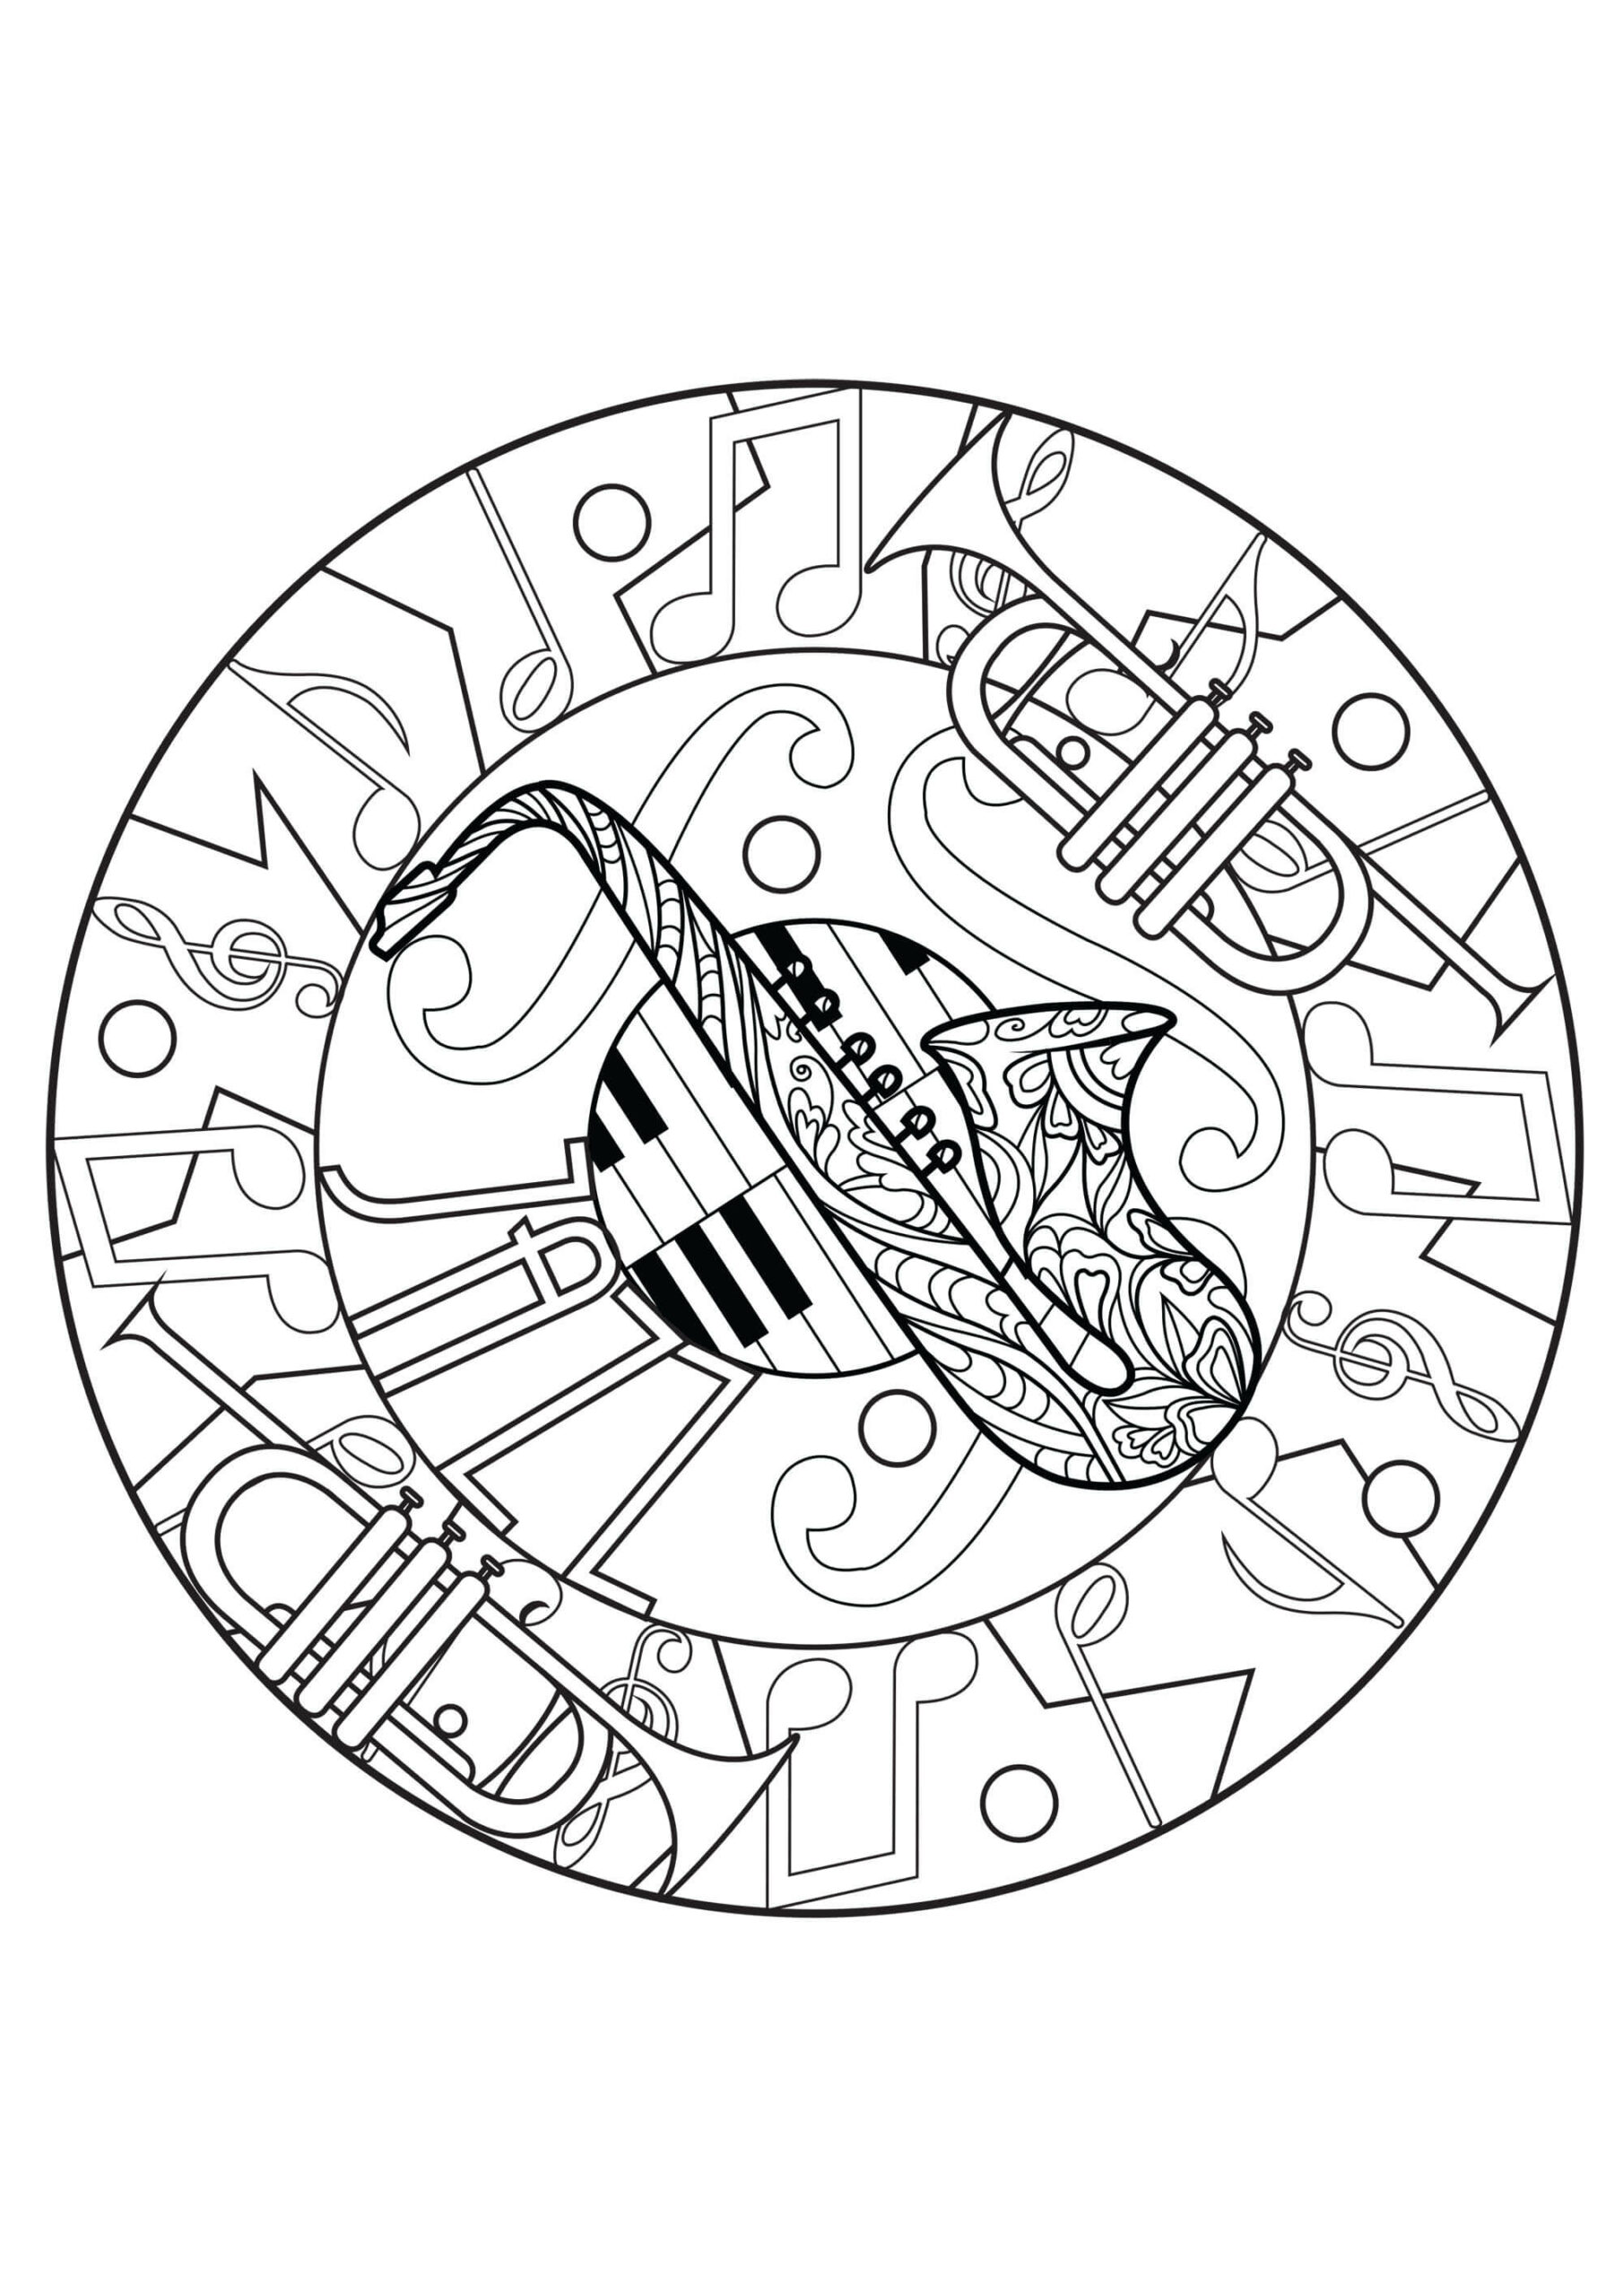 Saxophone Pour Adultes coloring page